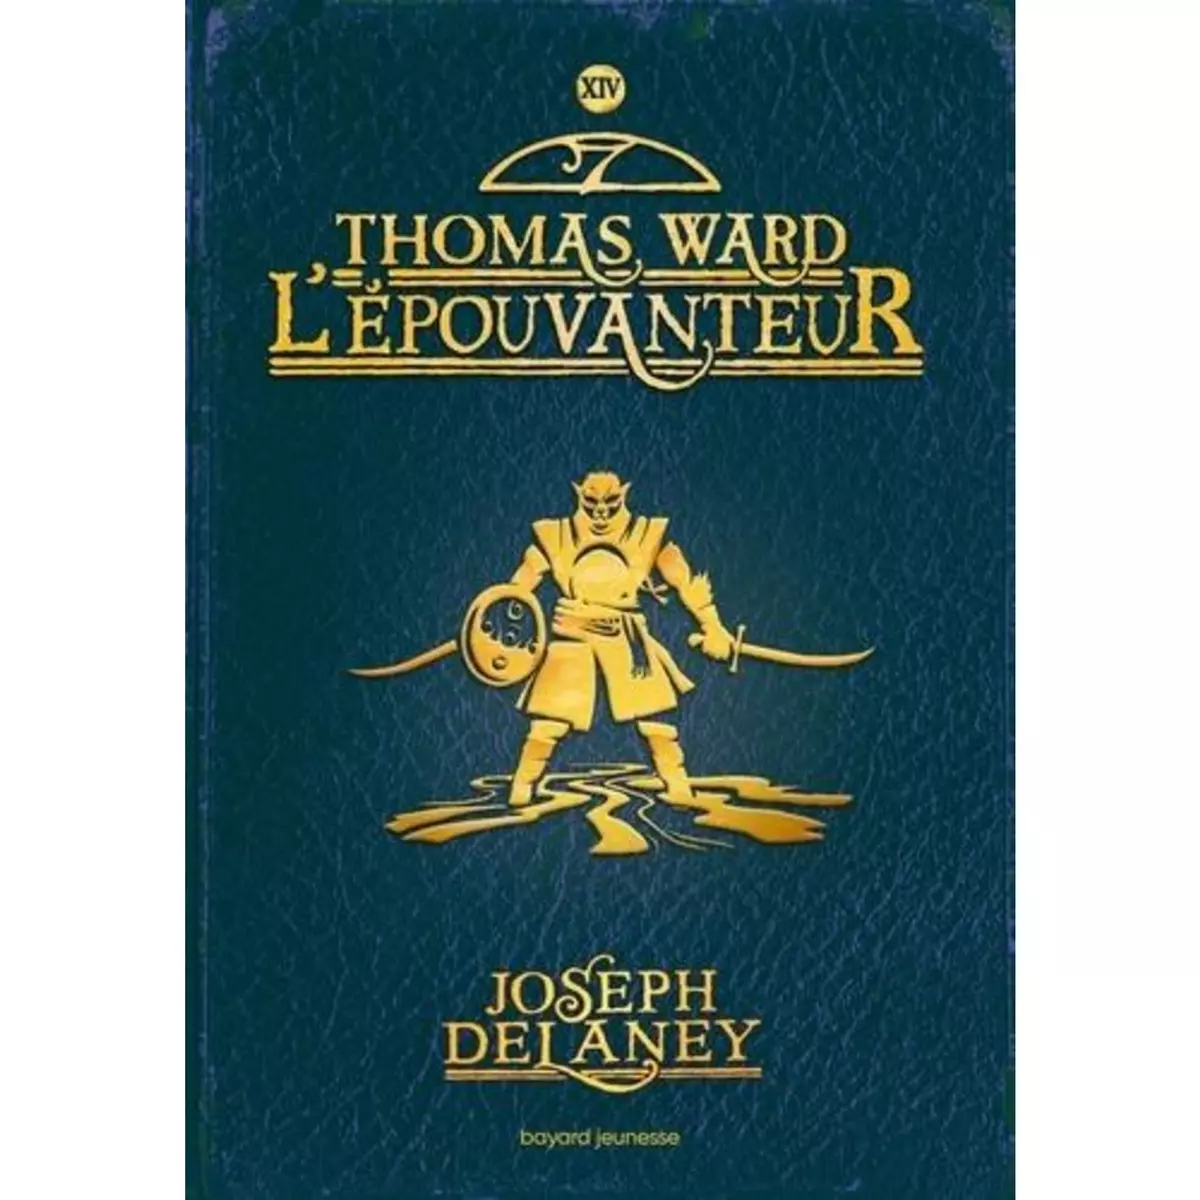  L'EPOUVANTEUR TOME 14 : THOMAS WARD L'EPOUVANTEUR, Delaney Joseph